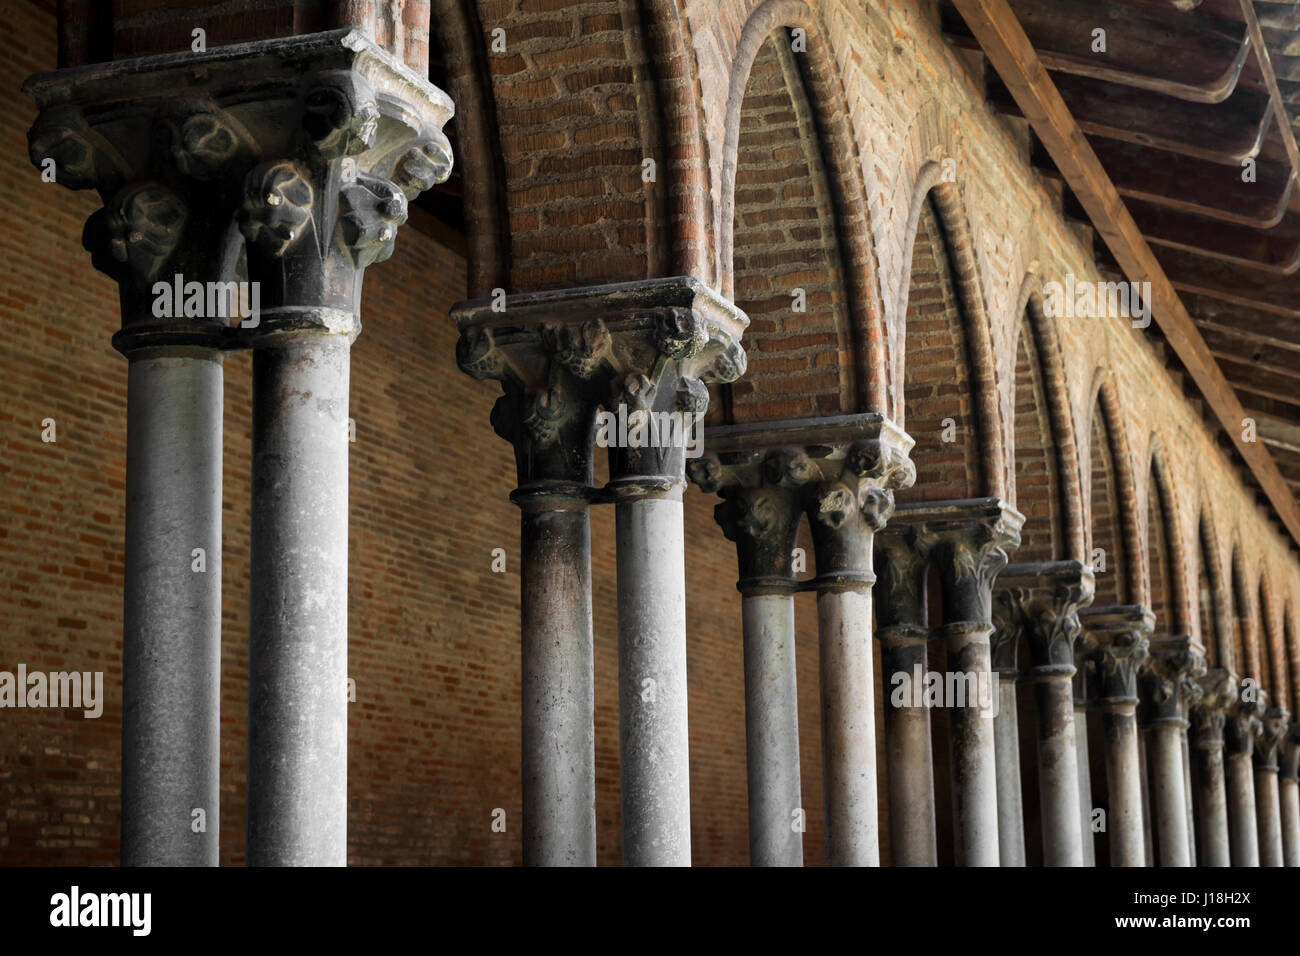 Nahaufnahme auf Säulen und Bögen des Klosters in alten dominikanischen Kloster Couvent des Jacobins in Toulouse, Frankreich. Architektonische Details. Stockfoto